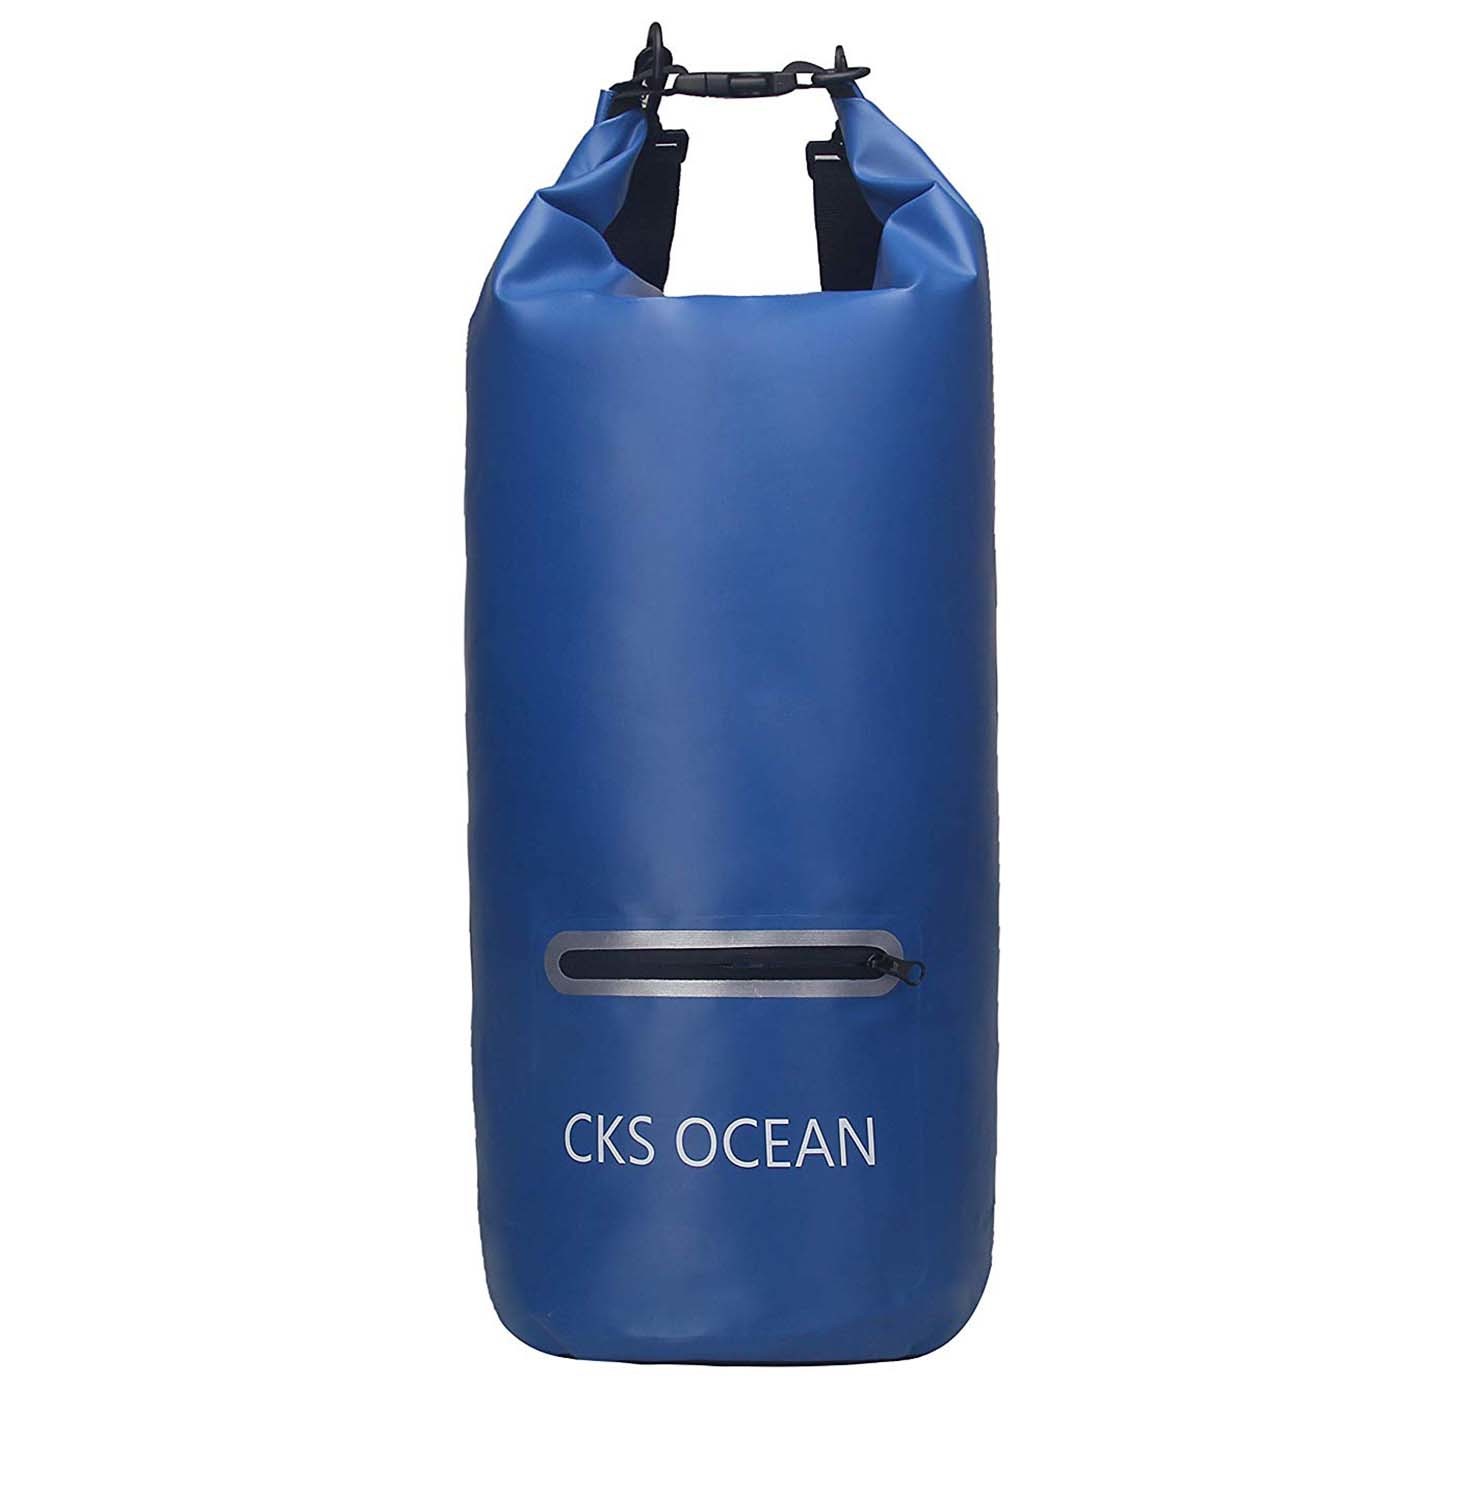 light Waterproof dry bag with adjustable shoulder strap for kayaking